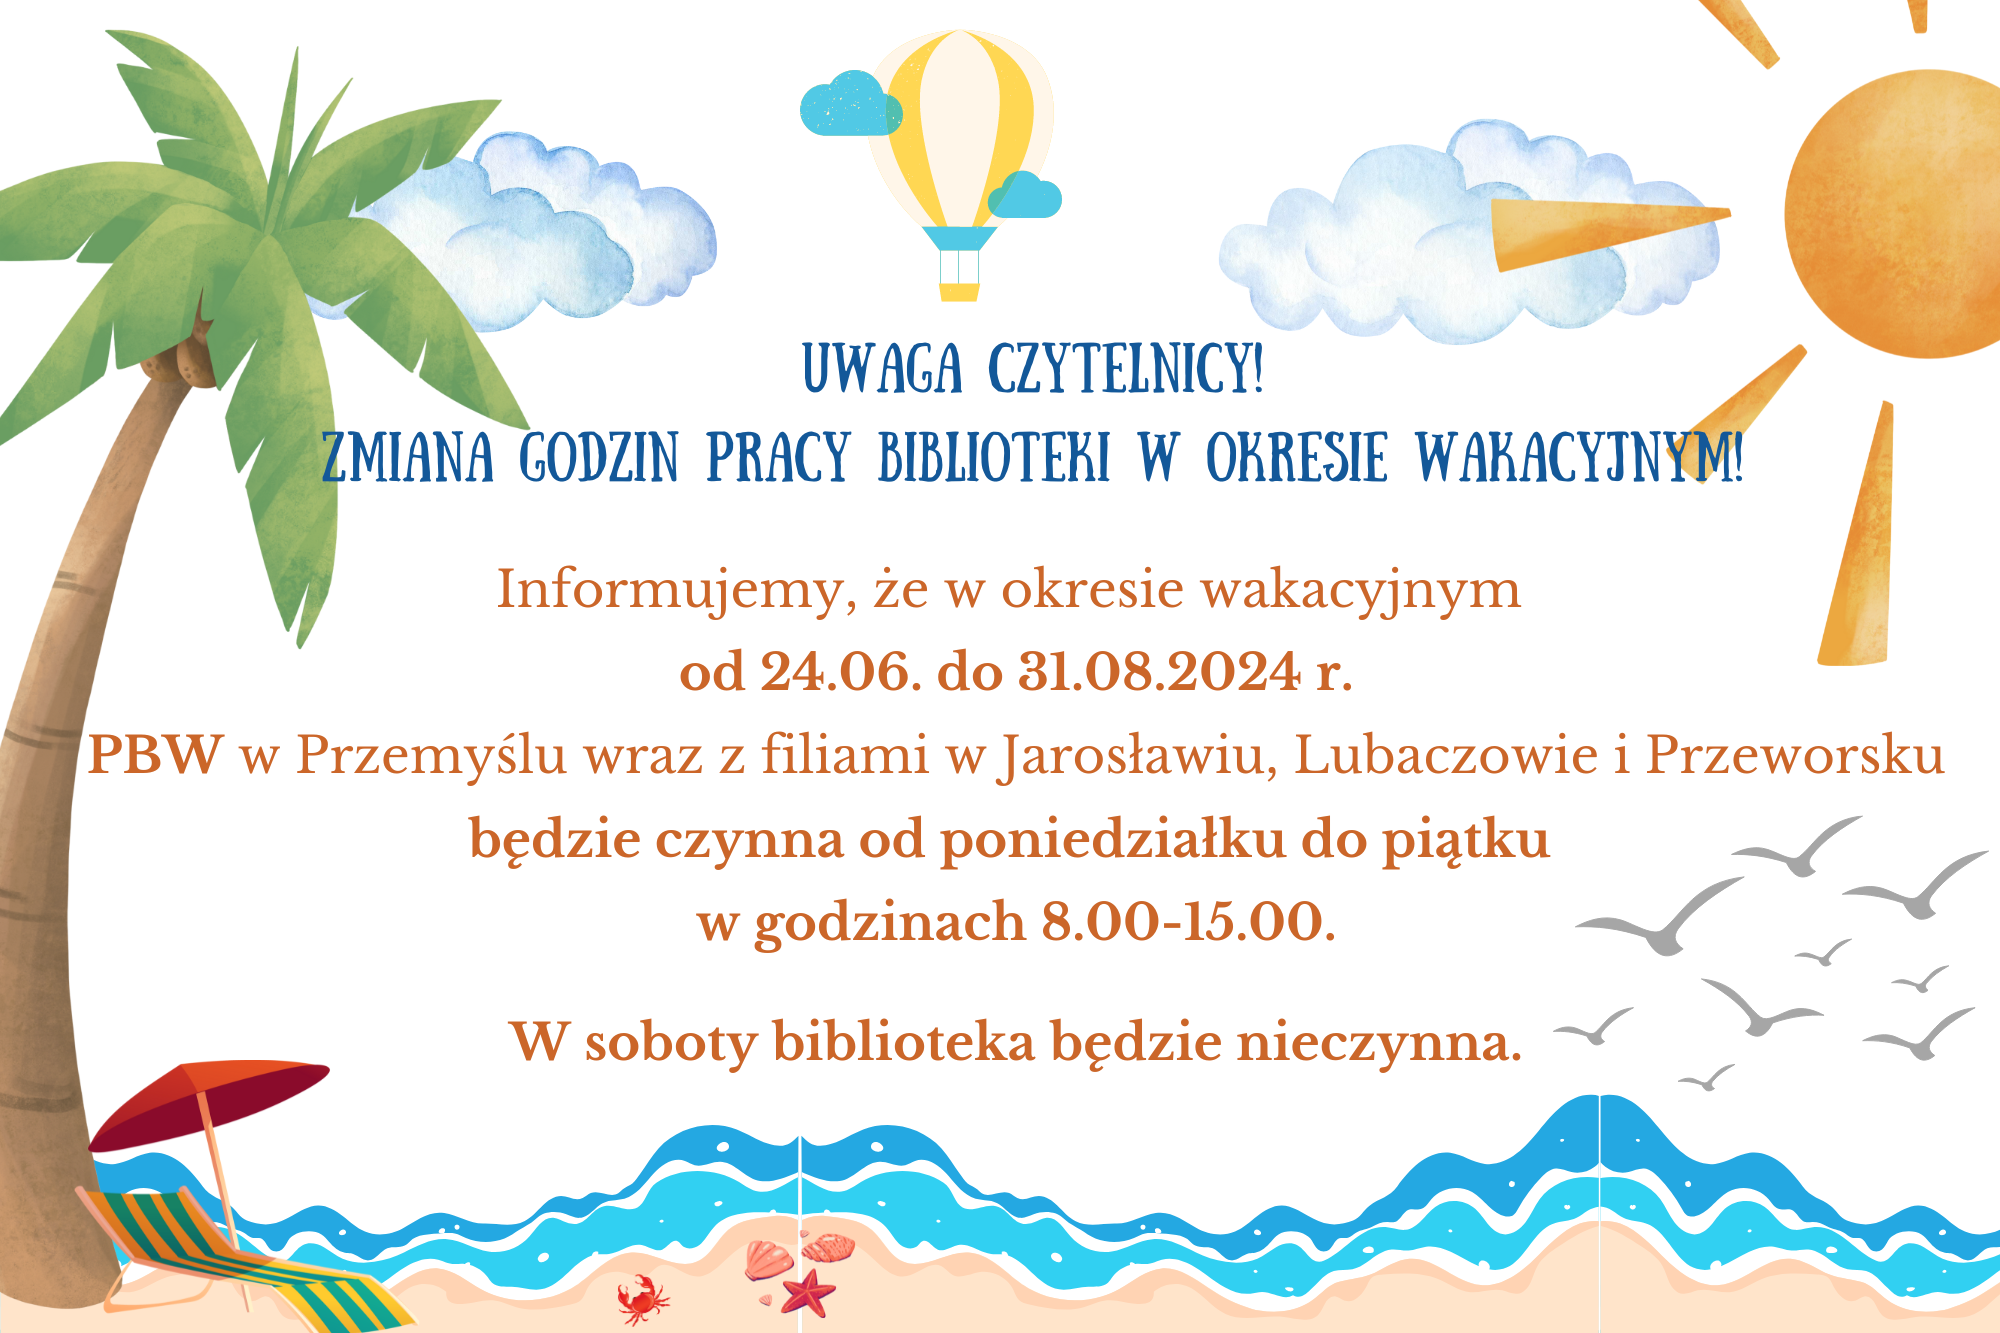 Informujemy, że w okresie wakacyjnym  od 24.06. do 31.08.2024 r. PBW w Przemyślu wraz z filiami w Jarosławiu, Lubaczowie i Przeworsku będzie czynna od poniedziałku do piątku  w godzinach 8.00-15.00.  W soboty biblioteka będzie nieczynna.